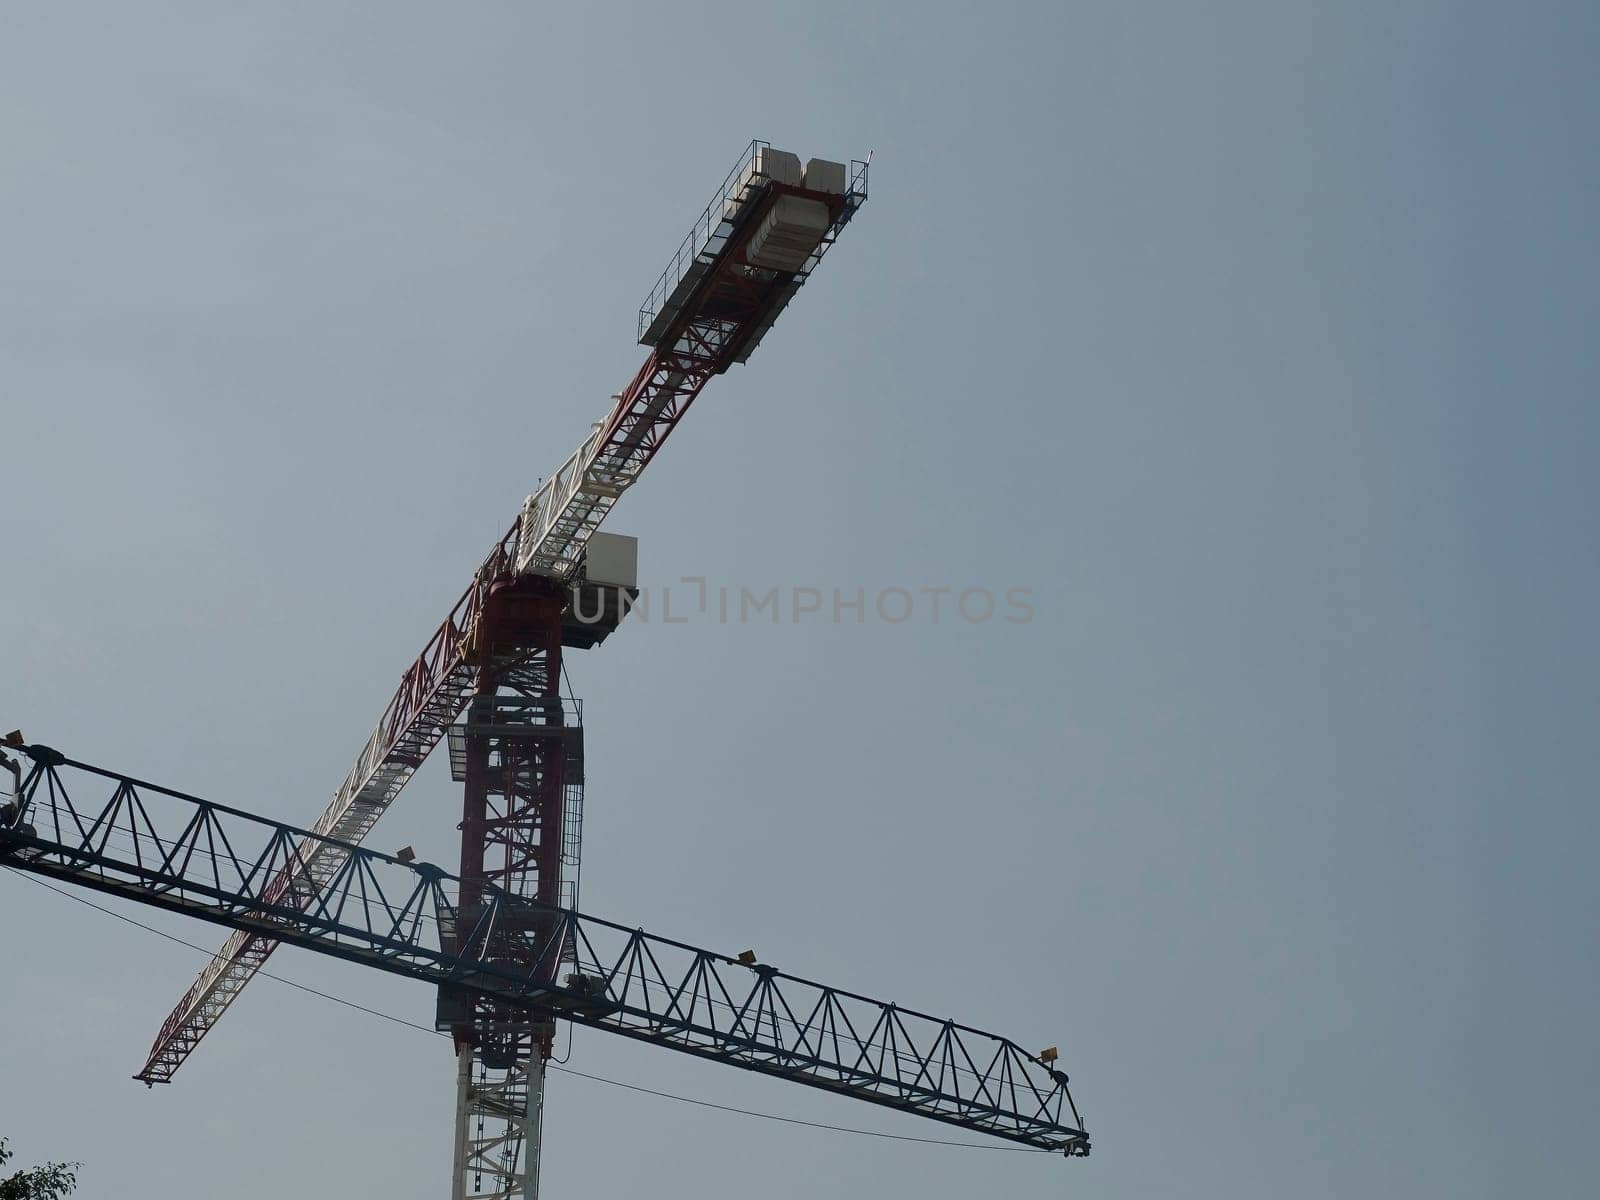 crane restoring buildings in ciudad de mexico, mexico city by AndreaIzzotti